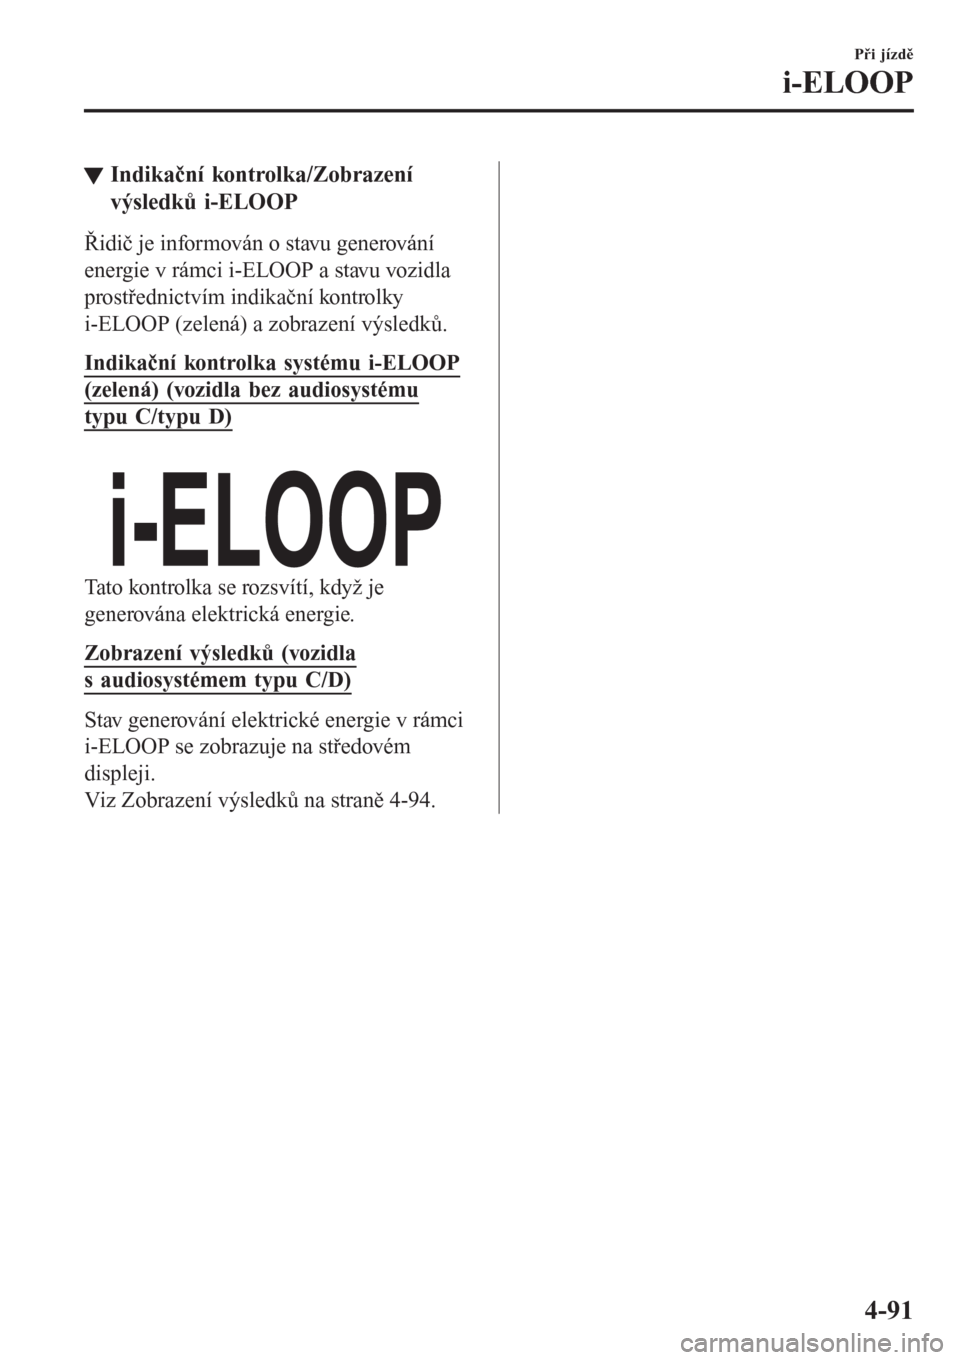 MAZDA MODEL CX-3 2016  Návod k obsluze (in Czech) tIndikační kontrolka/Zobrazení
výsledků i-ELOOP
Řidič je informován o stavu generování
energie v rámci i-ELOOP a stavu vozidla
prostřednictvím indikační kontrolky
i-ELOOP (zelená) a zo